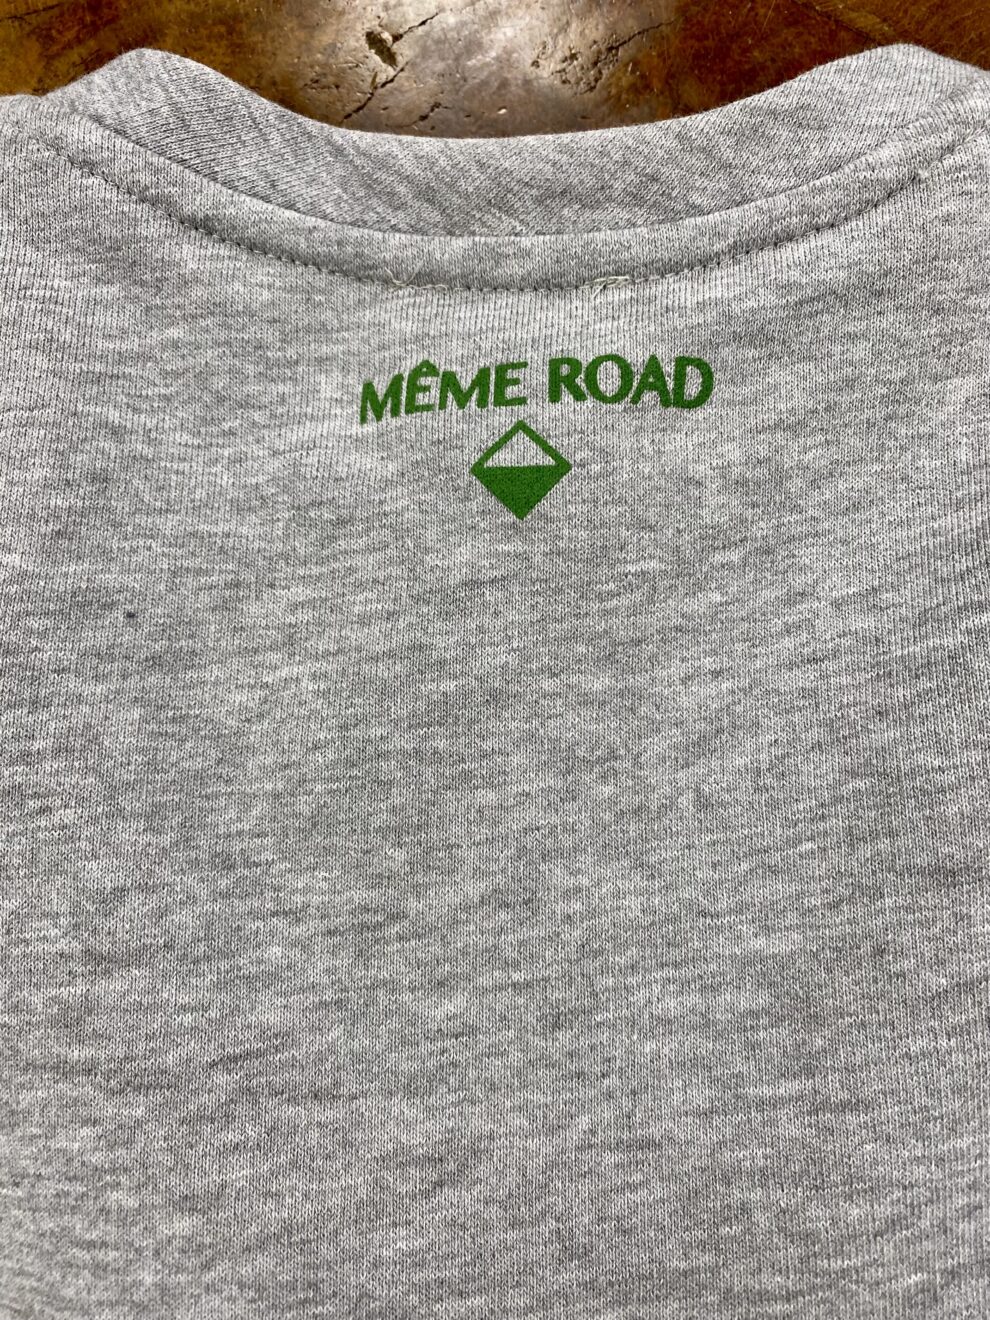 Felpa con Applicazioni Meme Road particolare-logo